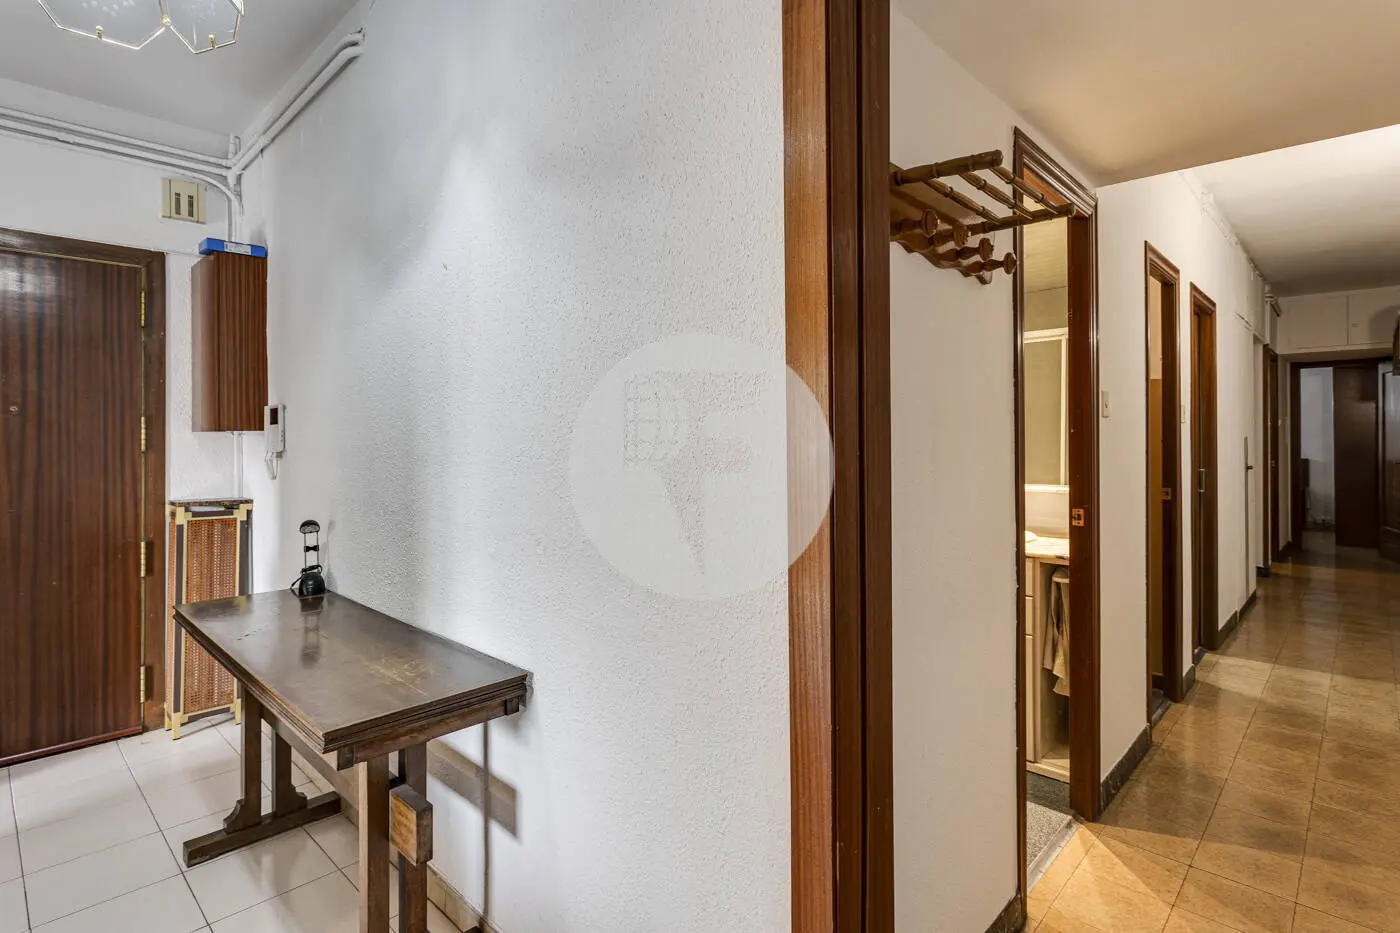 Piso de 3 habitaciones ubicado en el barrio de la Nova Esquerra de l'Eixample de Barcelona. 27